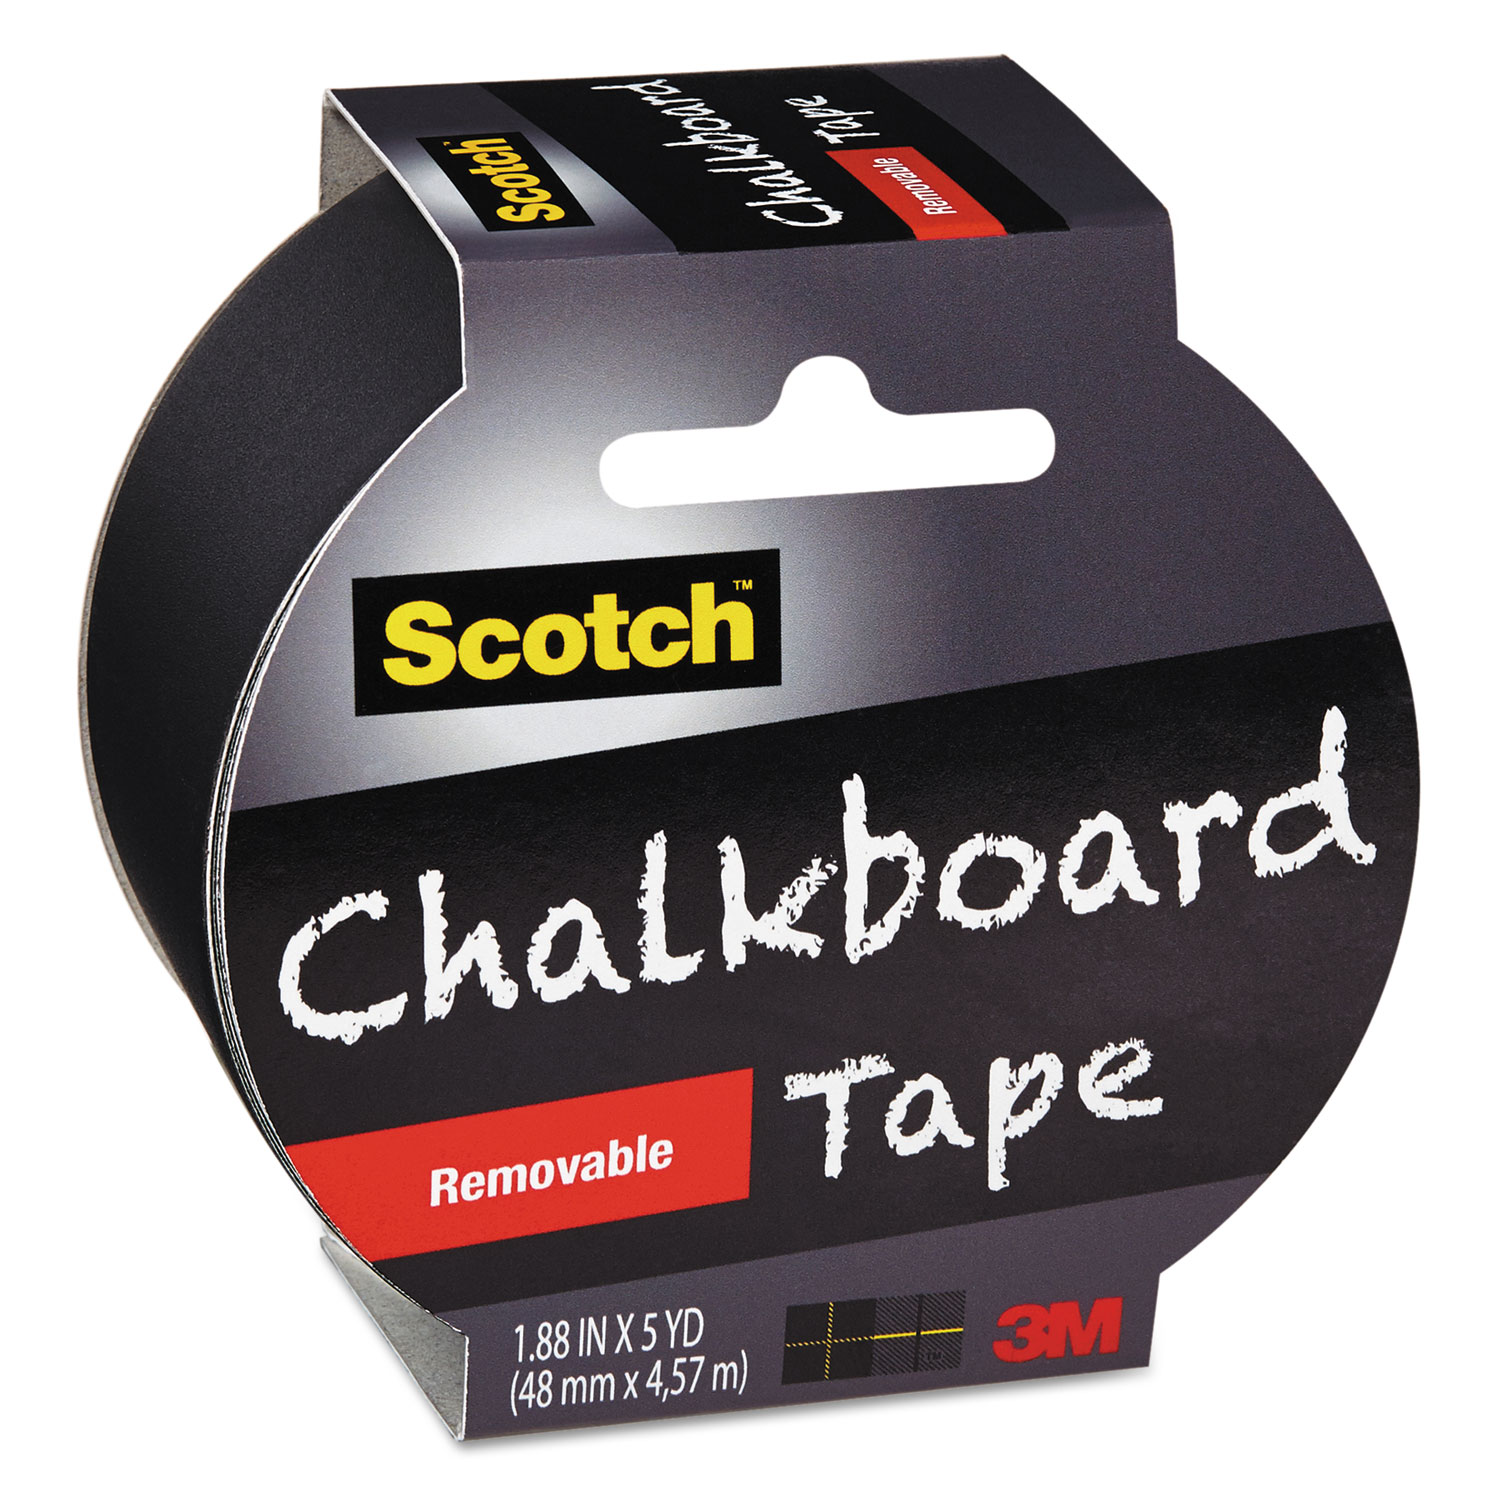 Chalkboard Tape, 1.88 x 5yds, 3 Core, Black